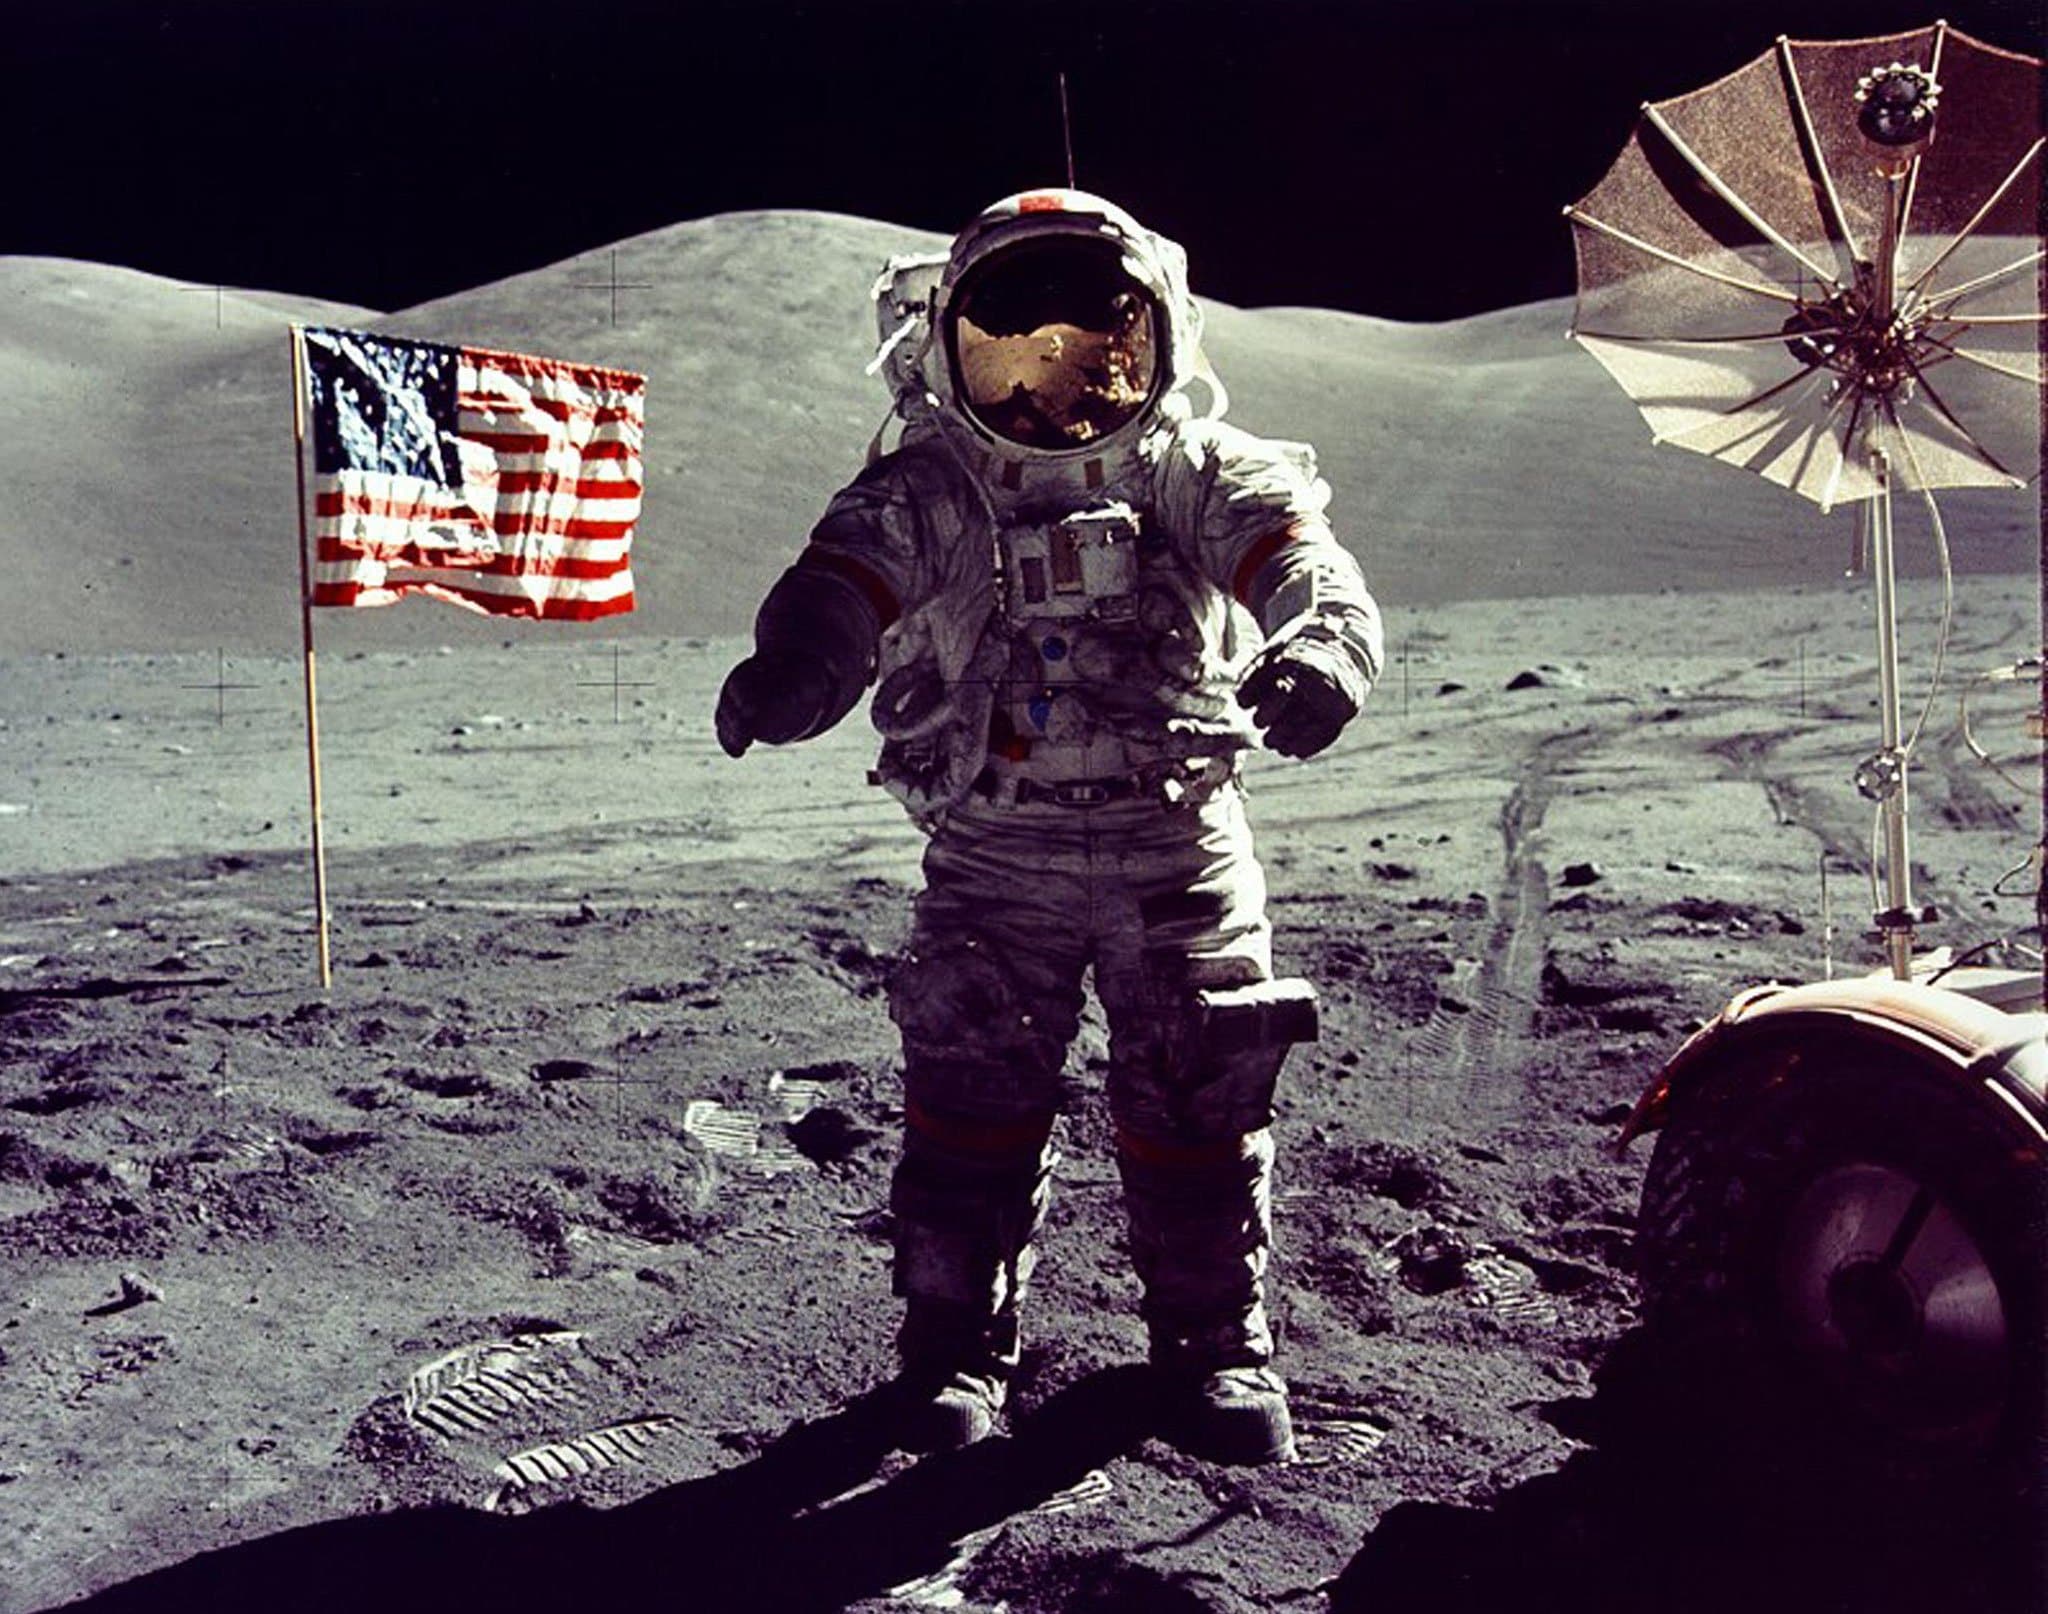 Is een ‘Wall of Death’ op de maan de oplossing voor astronauten om fit te blijven?